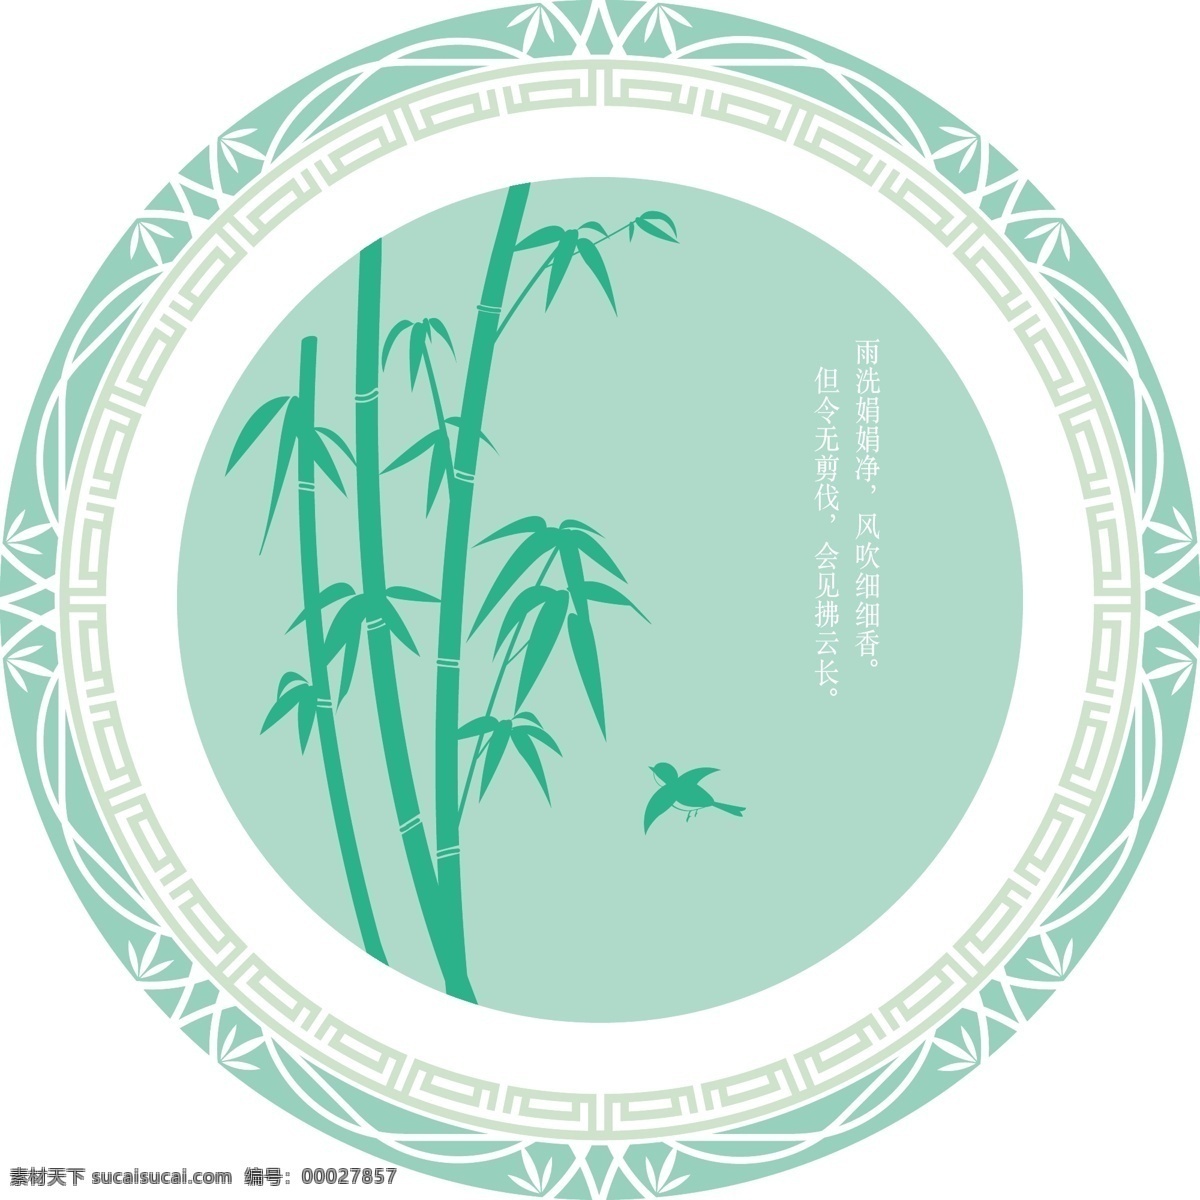 原创 清雅 中式 竹 纹 边框 配景 中国风 竹子 叶子 淡雅 竹纹 青绿 装饰框